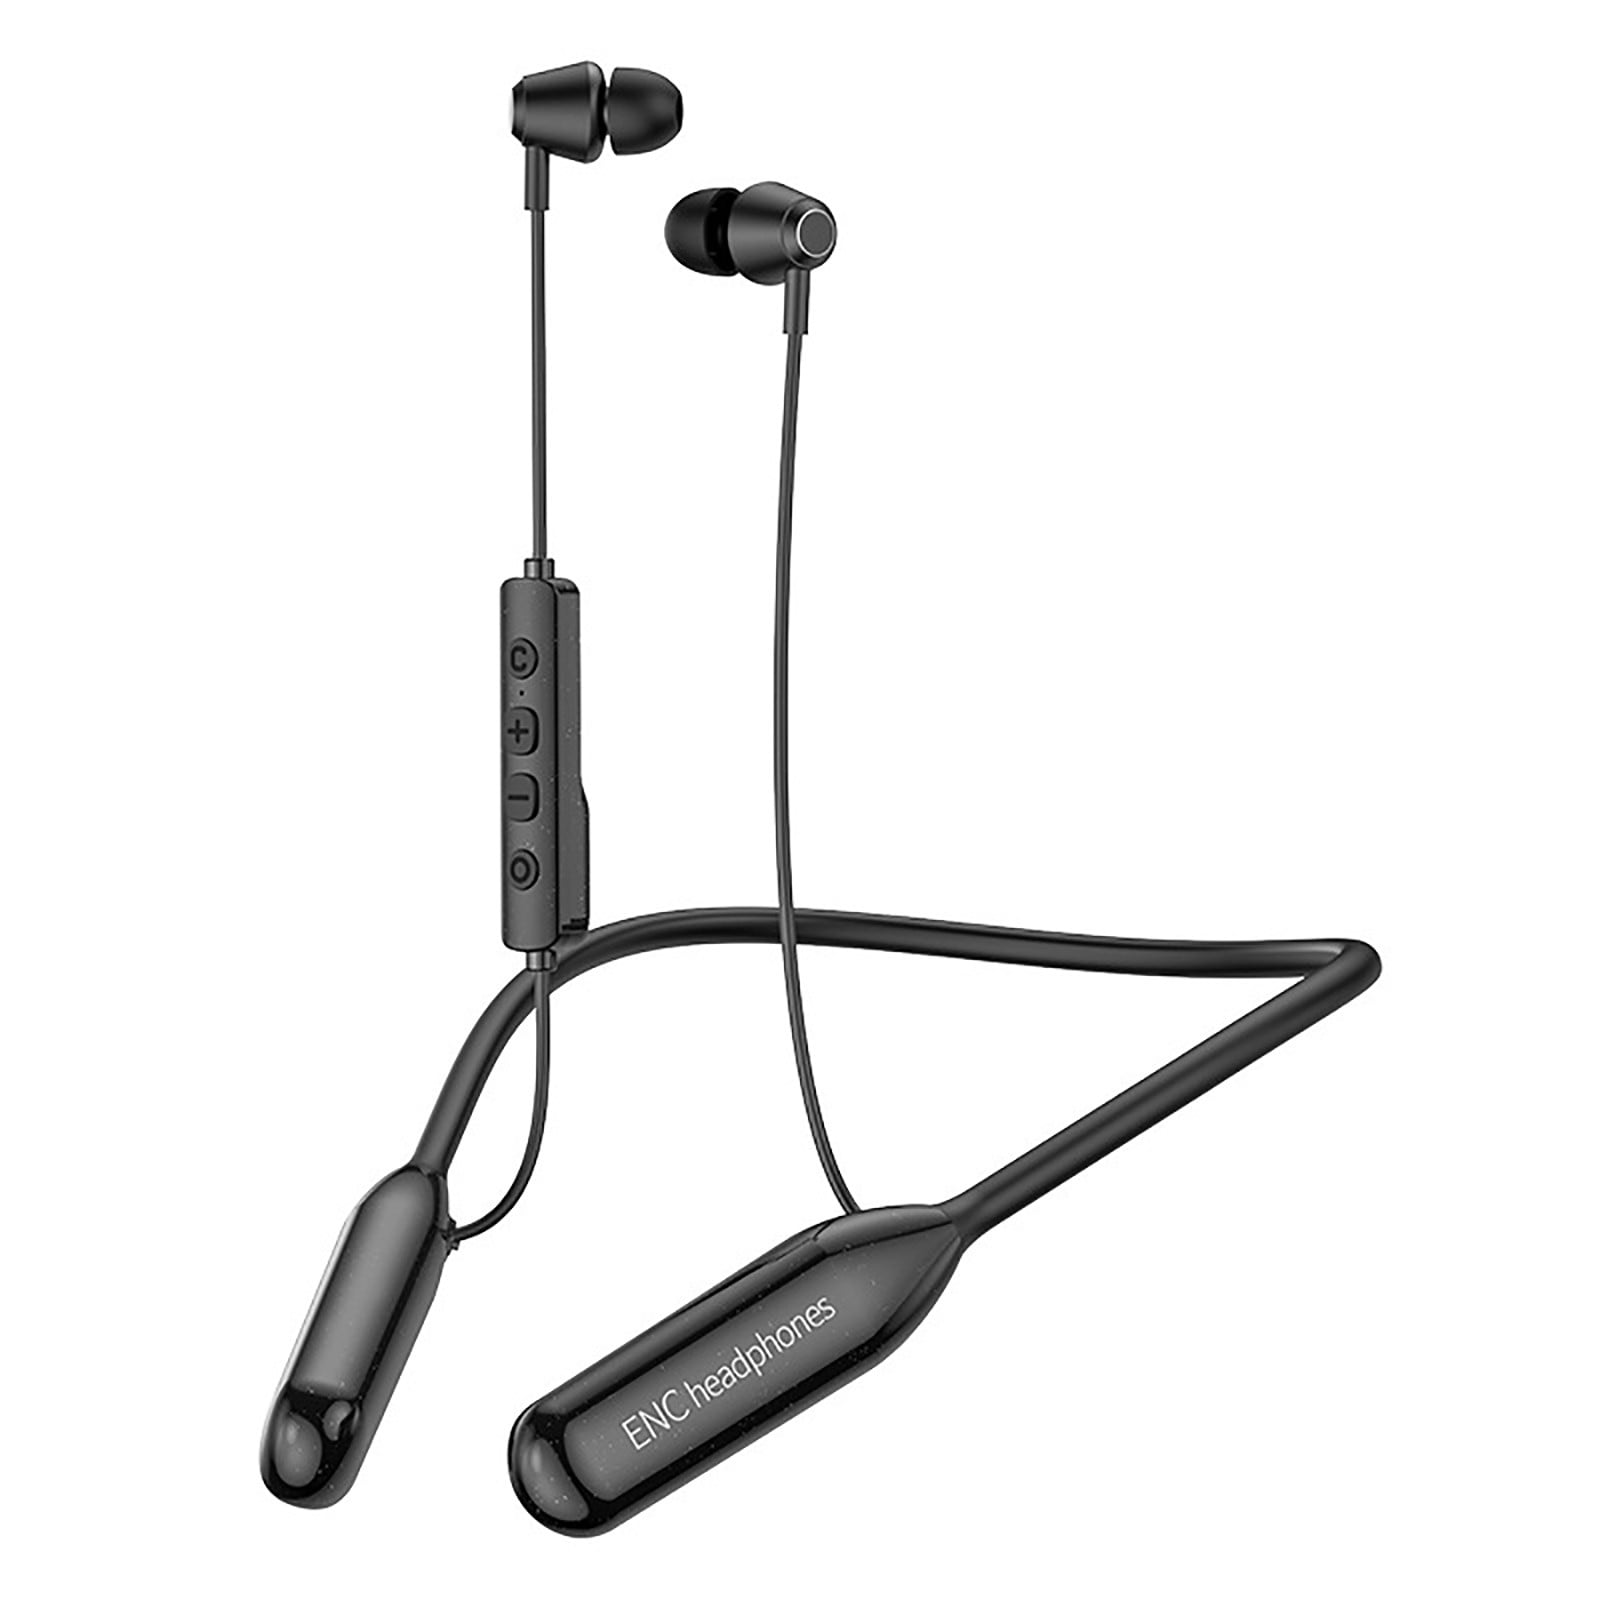 オンラインストア販売店舗 Bluetooth Headphones Wireless Earbuds Neckband with mic Noise  Ca イヤホン、ヘッドホン